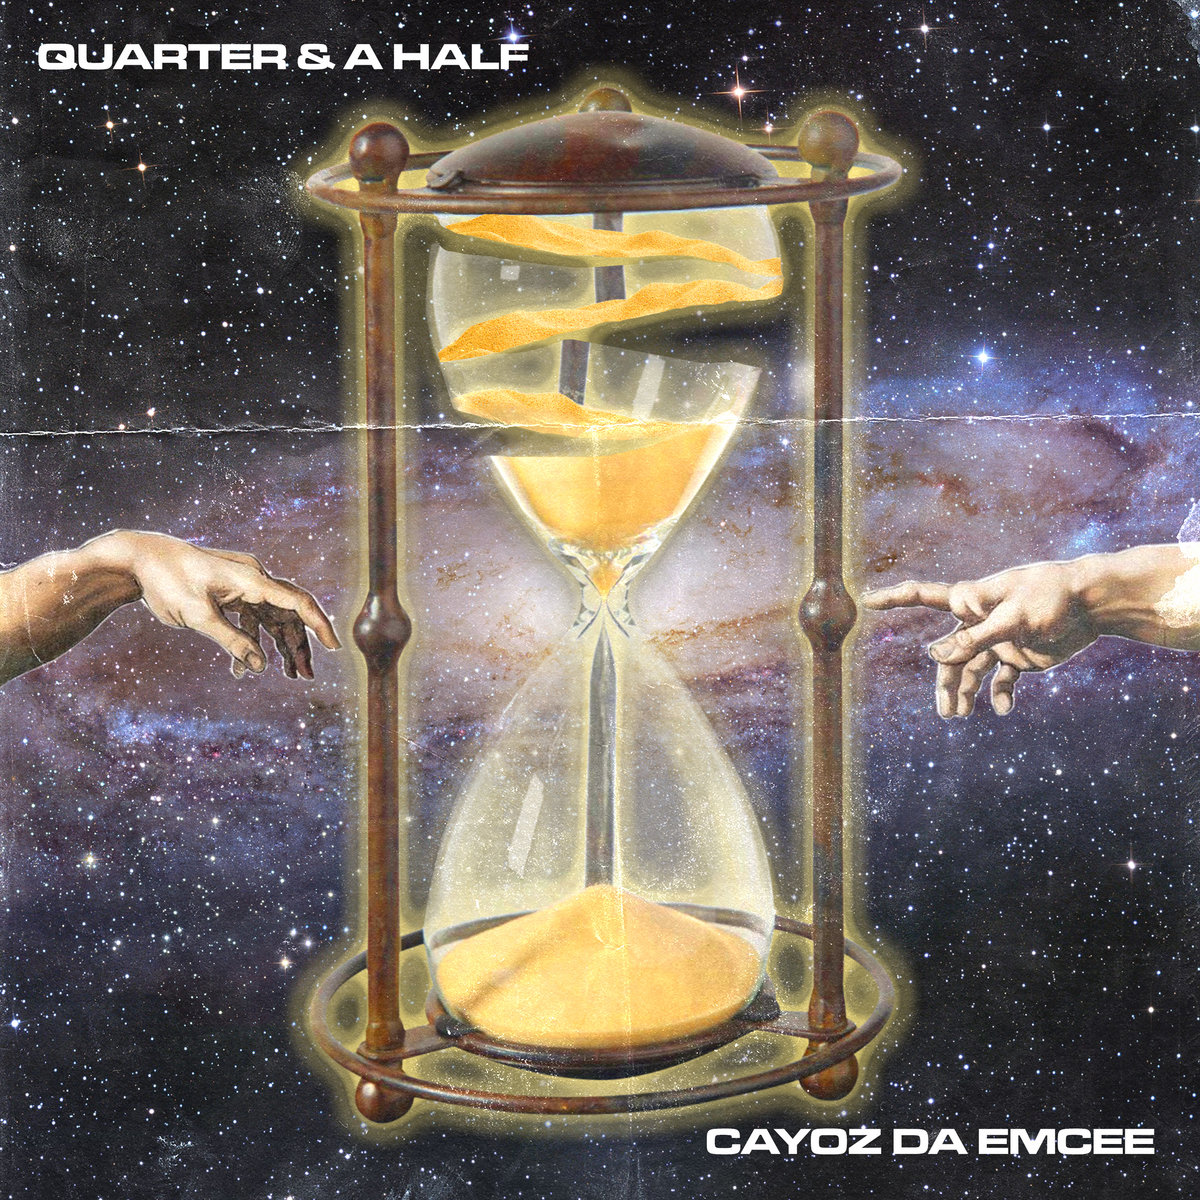 Cayoz_da_emcee_quarter___a_half